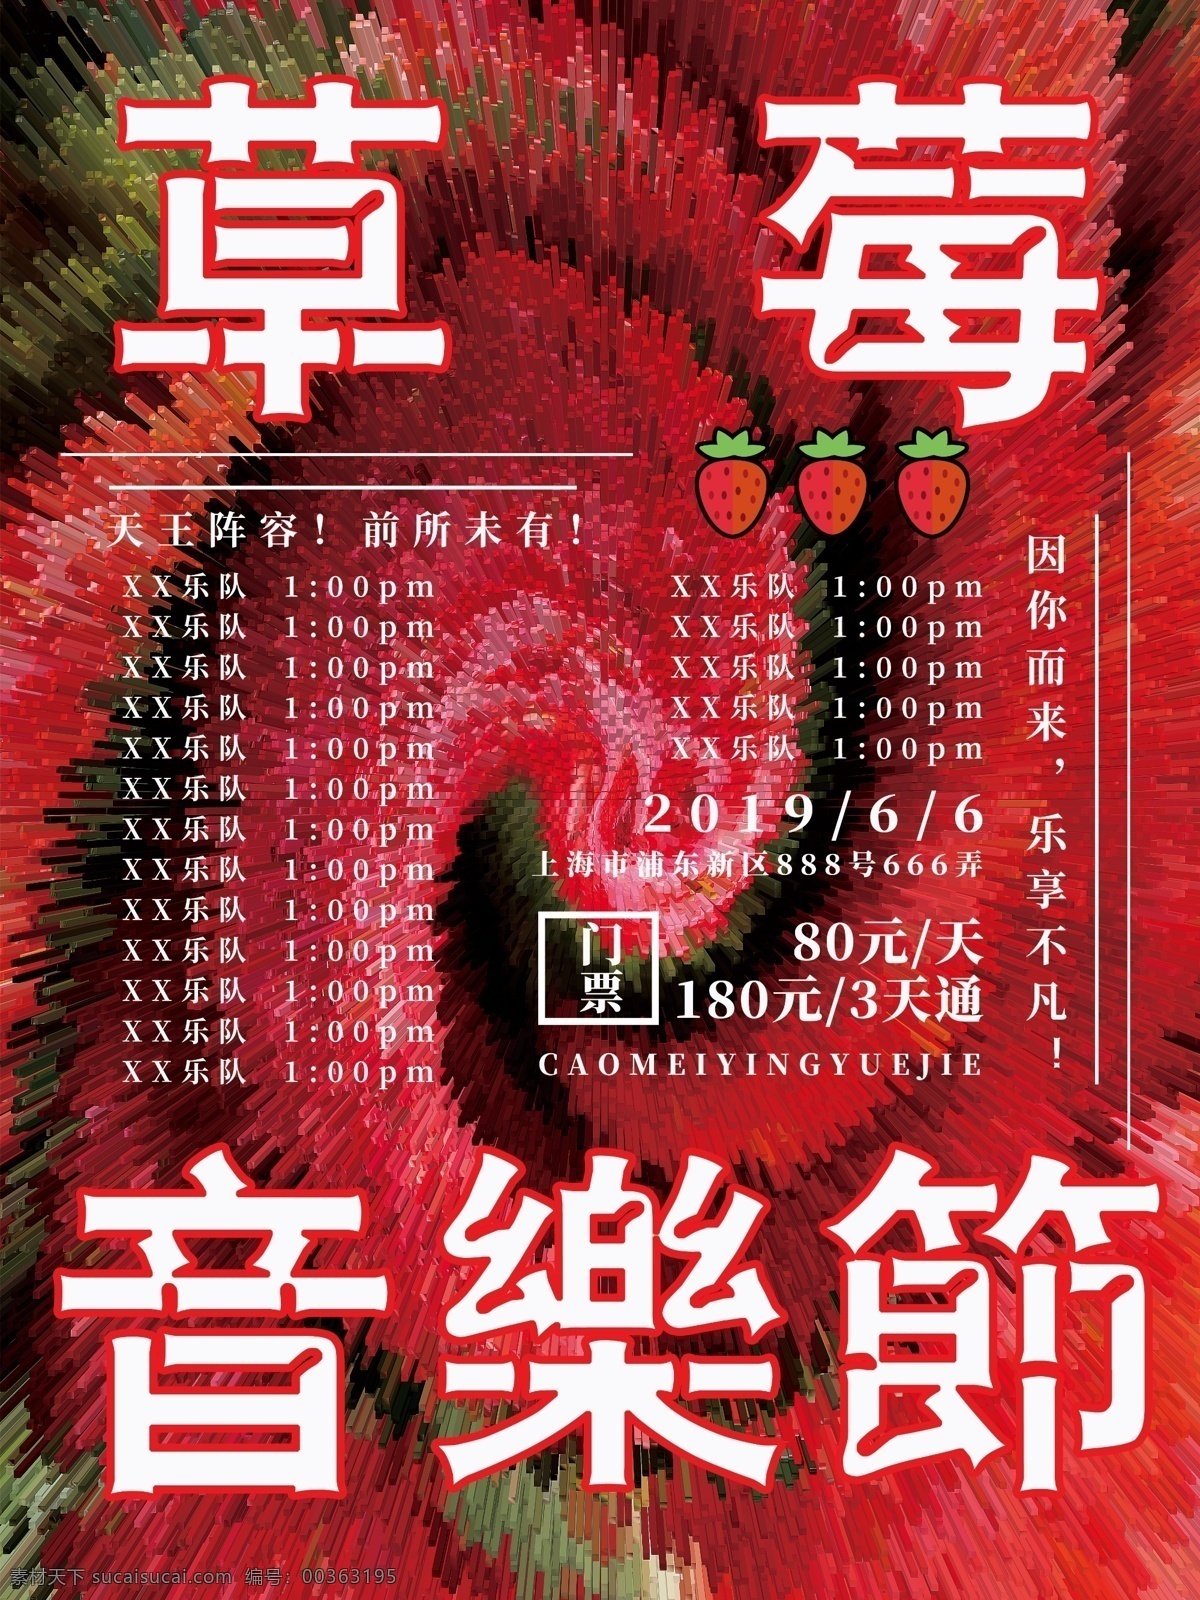 创意 突出 炫目 草莓 音乐节 排版 海报 草莓音乐节